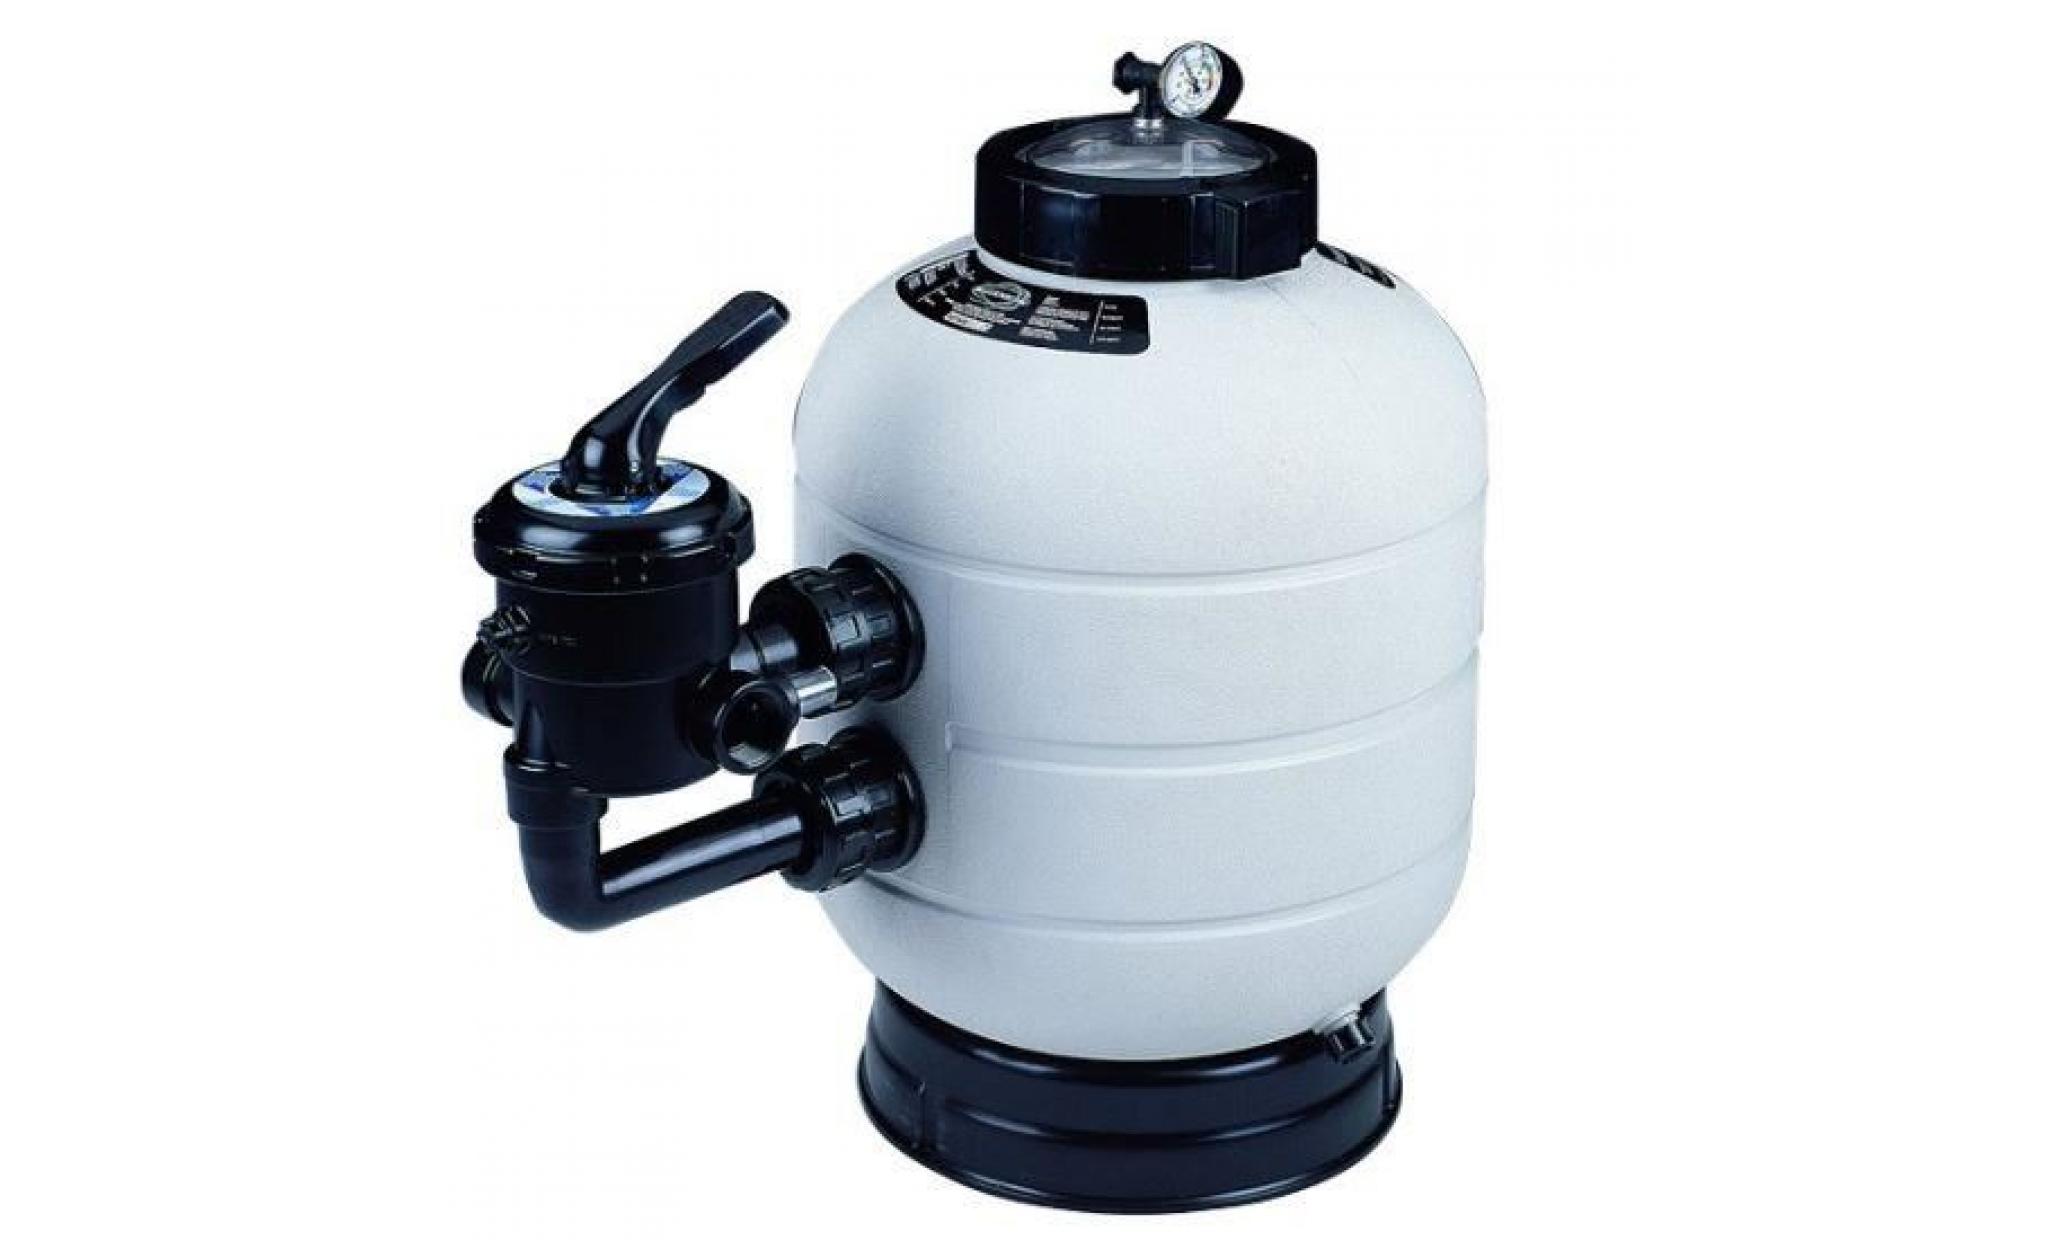 groupe de filtration piscine astral : pompe sena + filtre millenium 14 m3/h pas cher